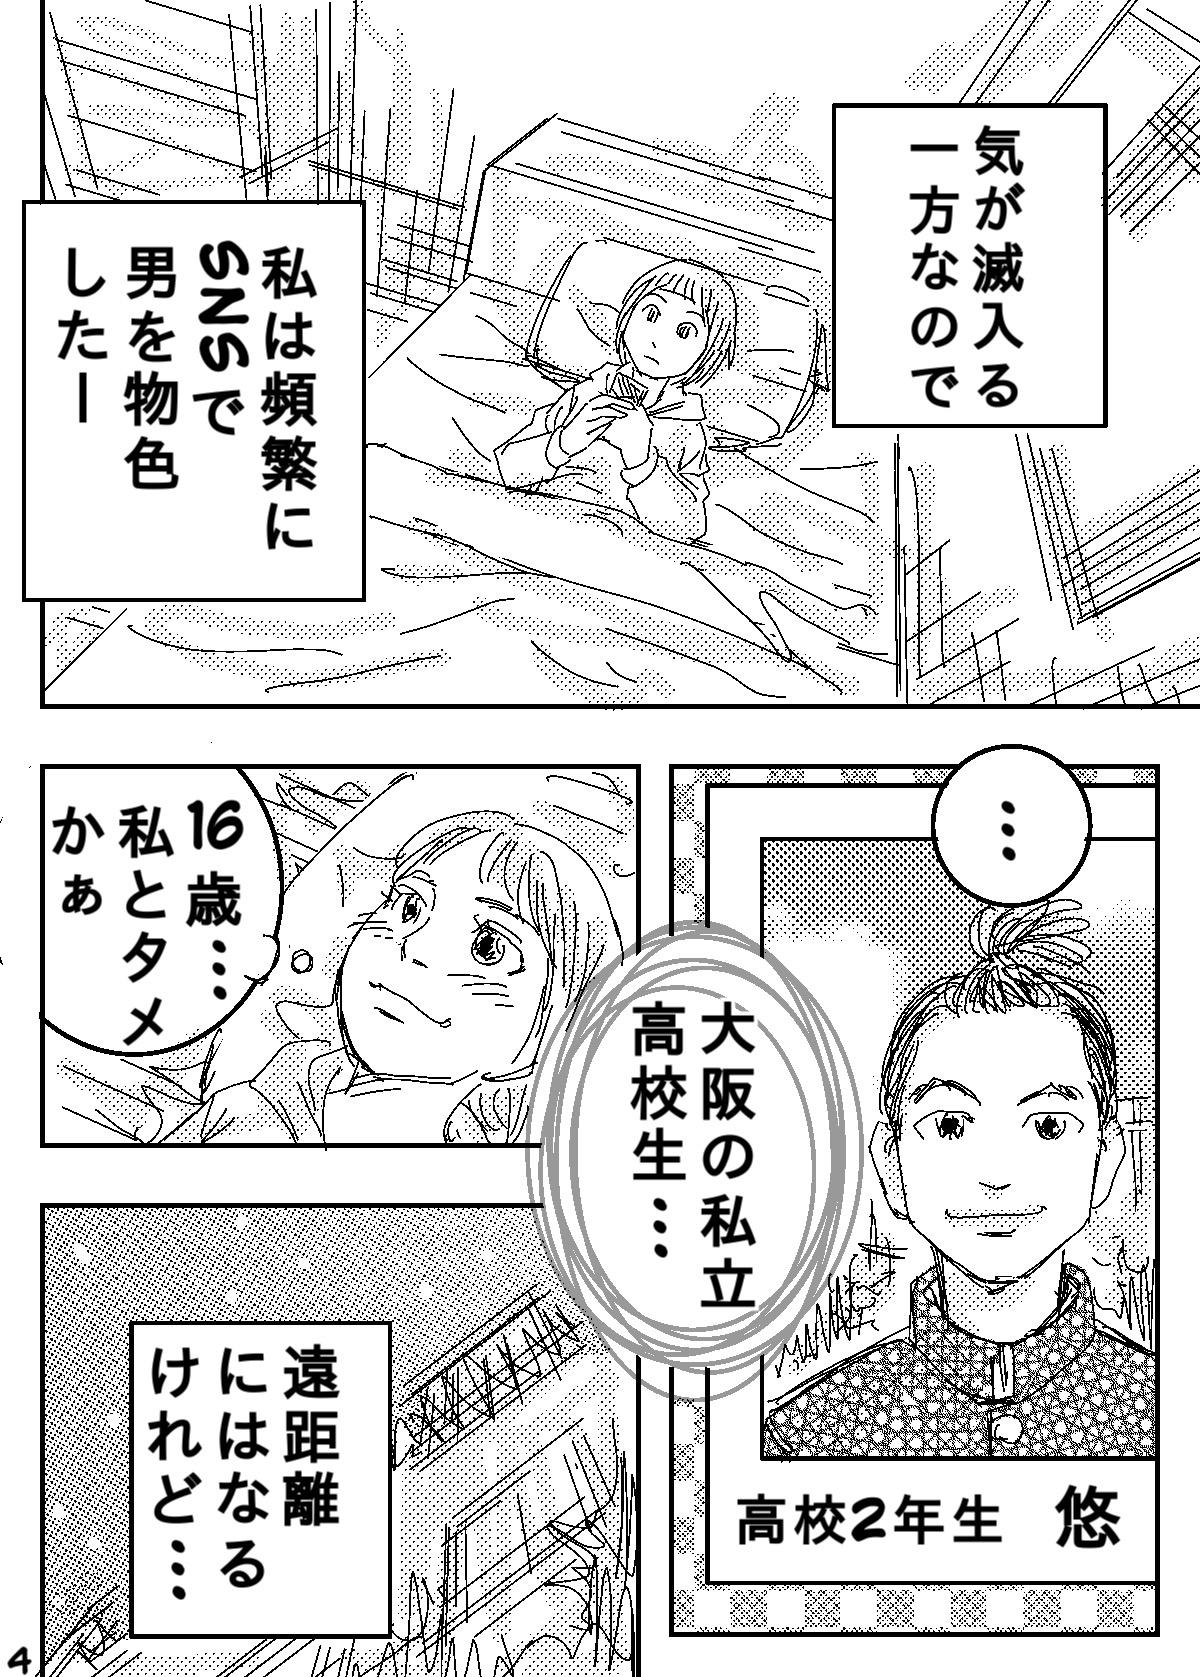 Teensnow Gesu no Kiwami Kazoku Masterbation - Page 4